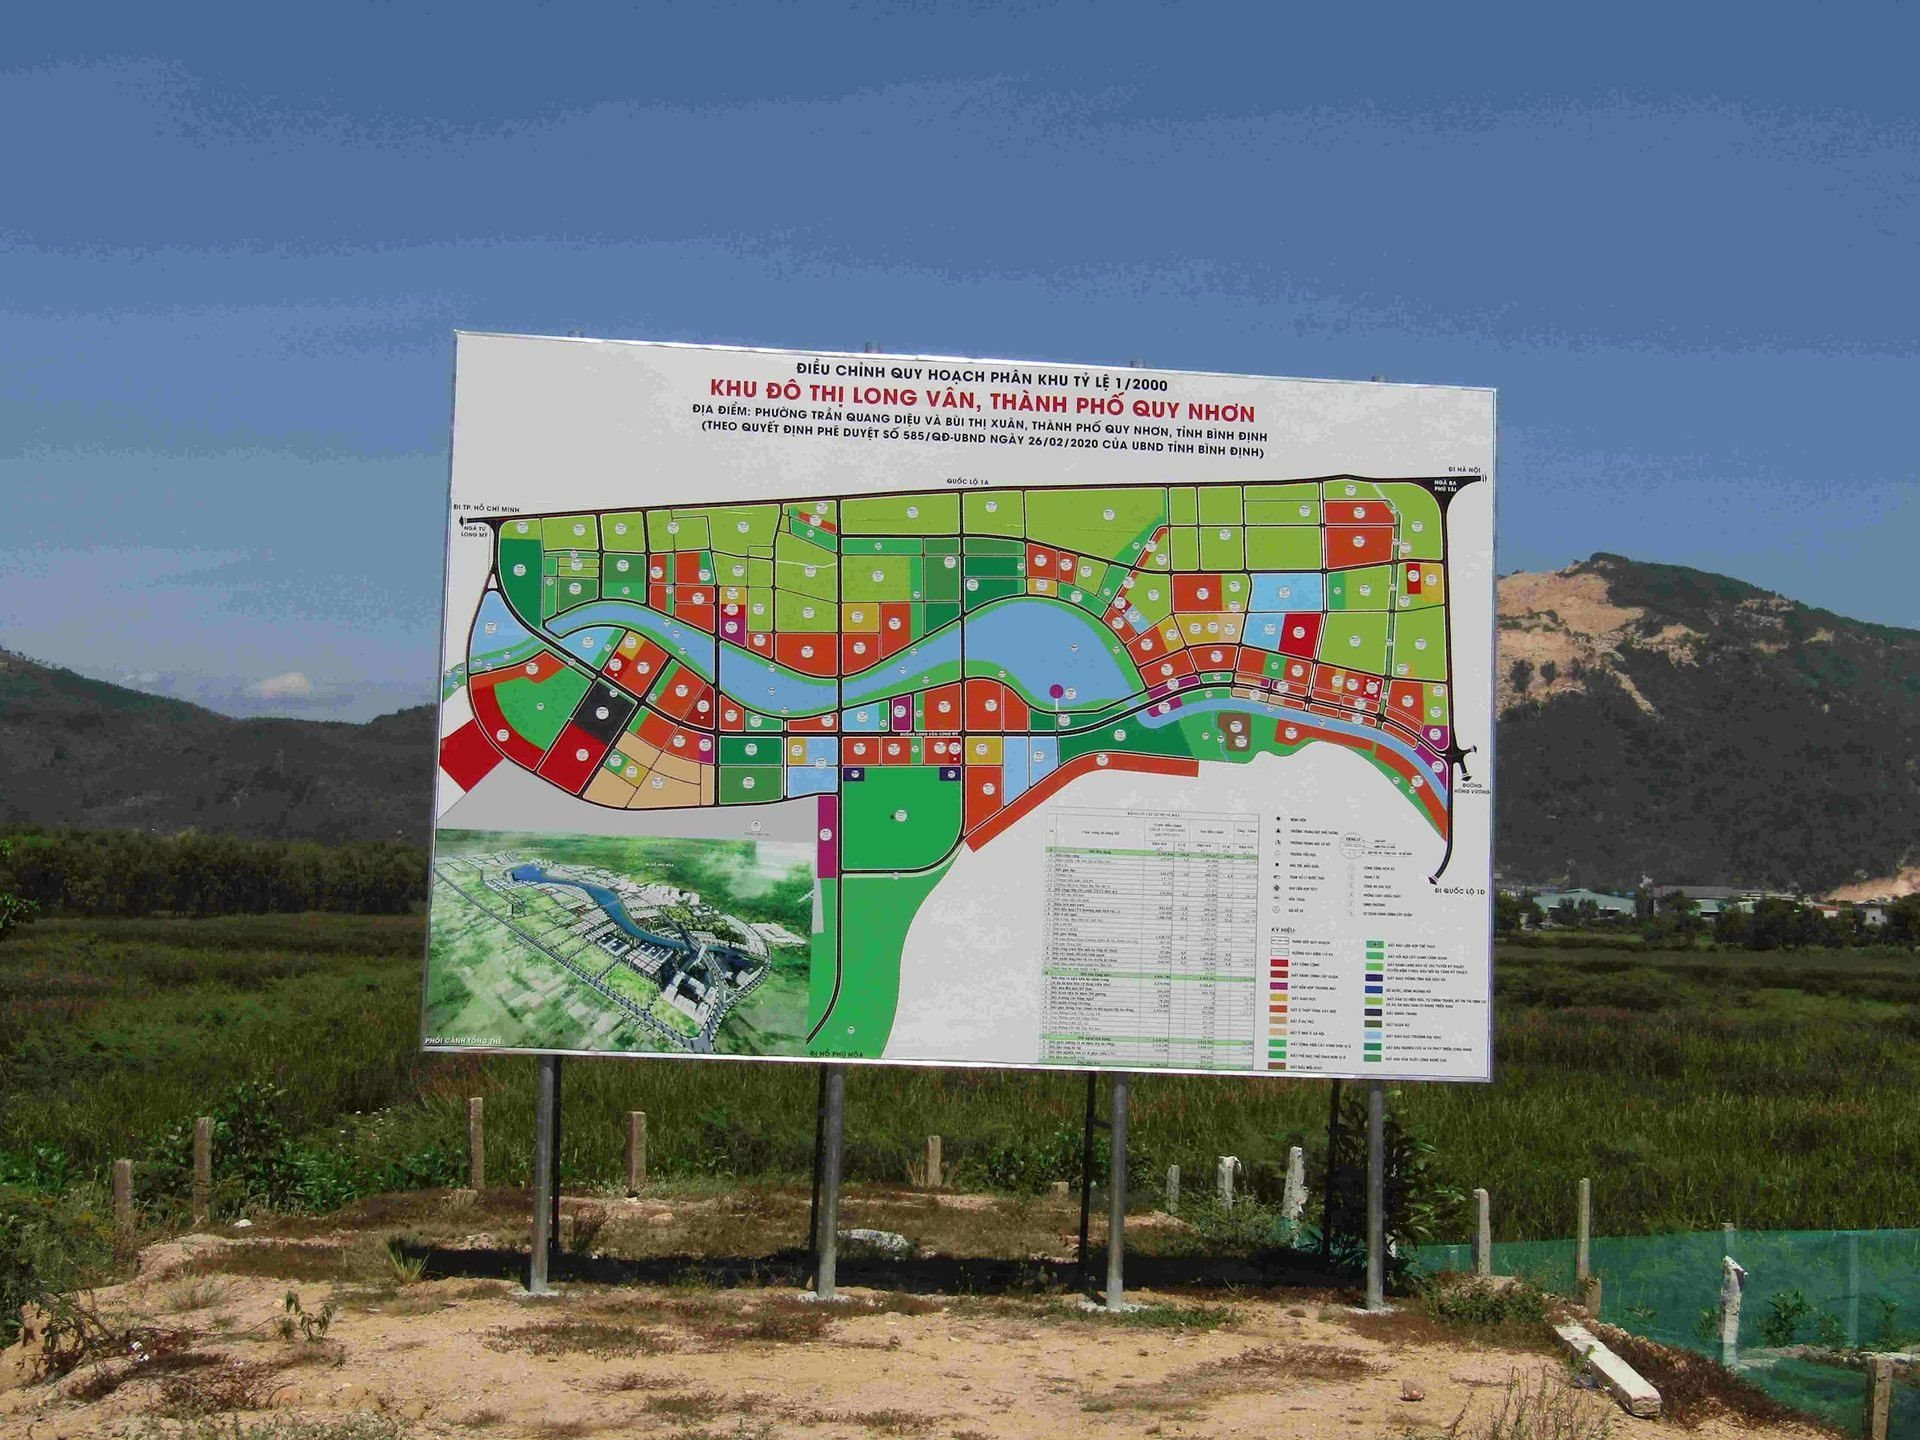 Bình Định: Điều chỉnh giảm giá khởi điểm đất đấu giá tại KĐT mới Long Vân, nhiều lô giảm hơn 900 triệu đồng